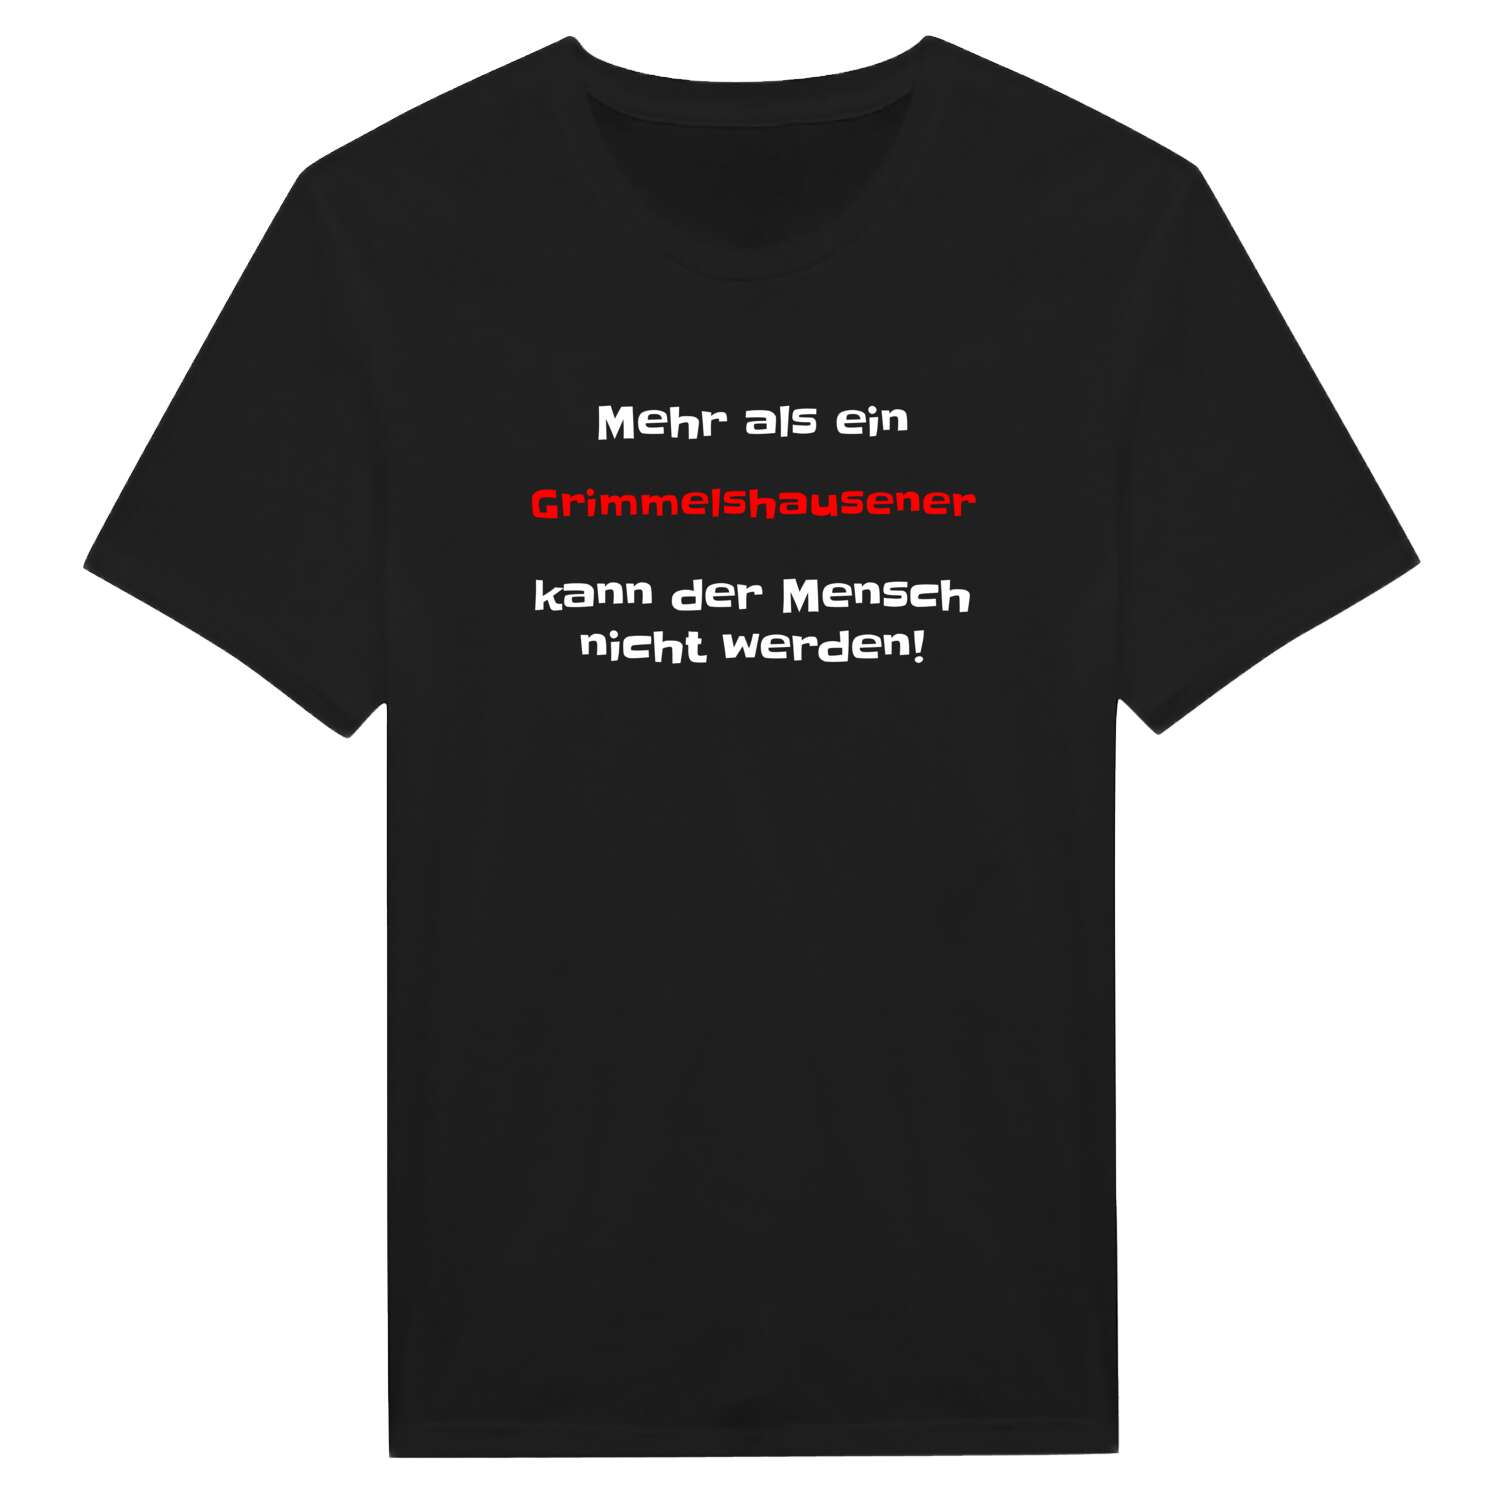 Grimmelshausen T-Shirt »Mehr als ein«